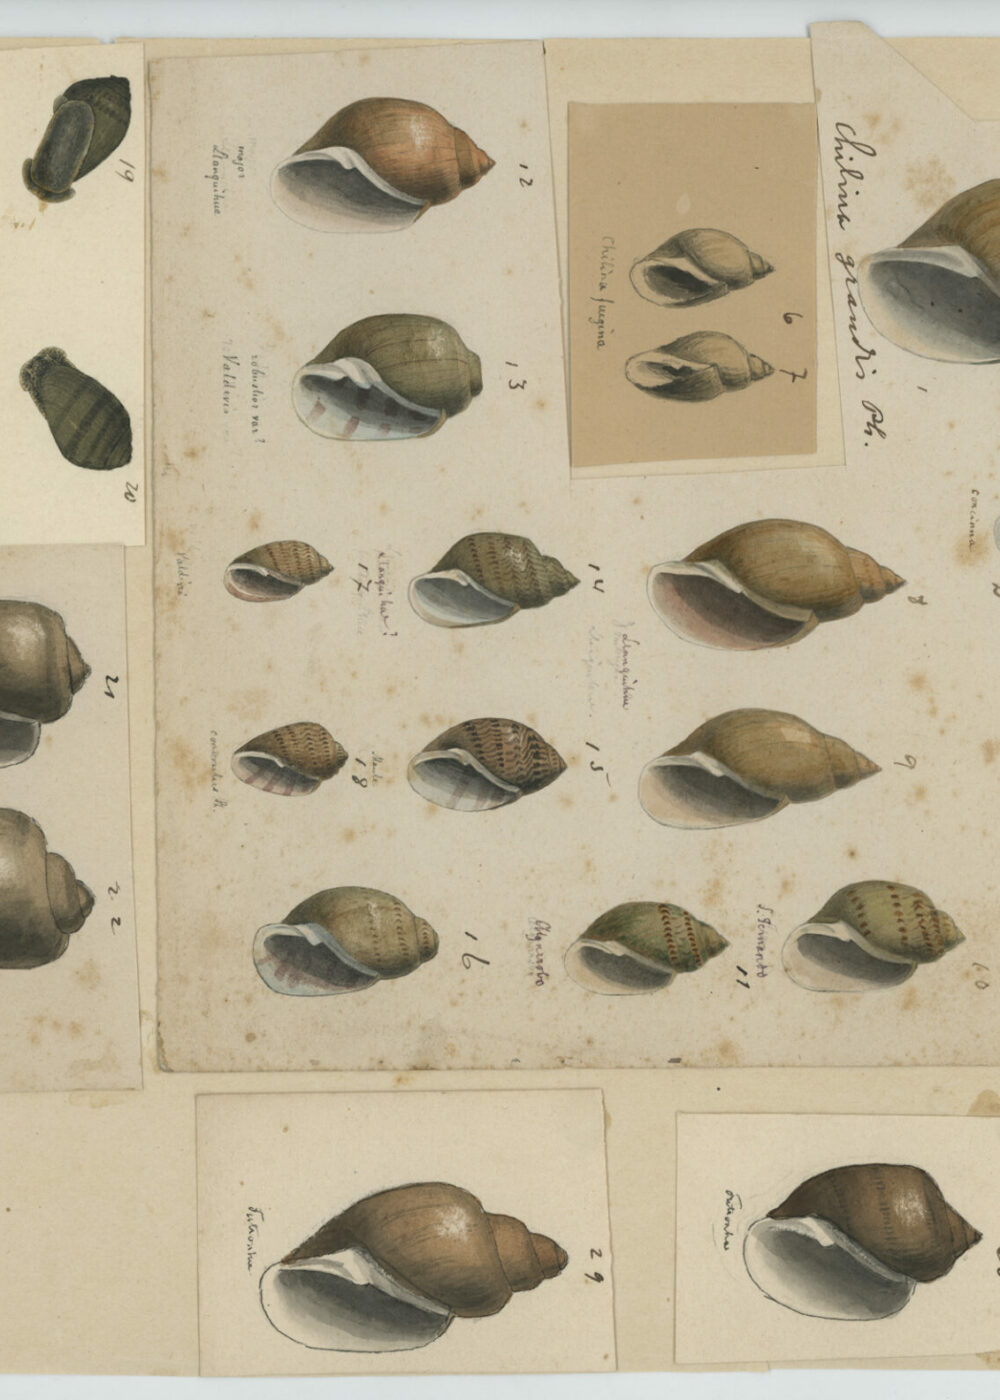 Exhibirán inédita muestra del archivo del naturalista alemán Rudolf Philippi en Chile, a 120 años de su muerte